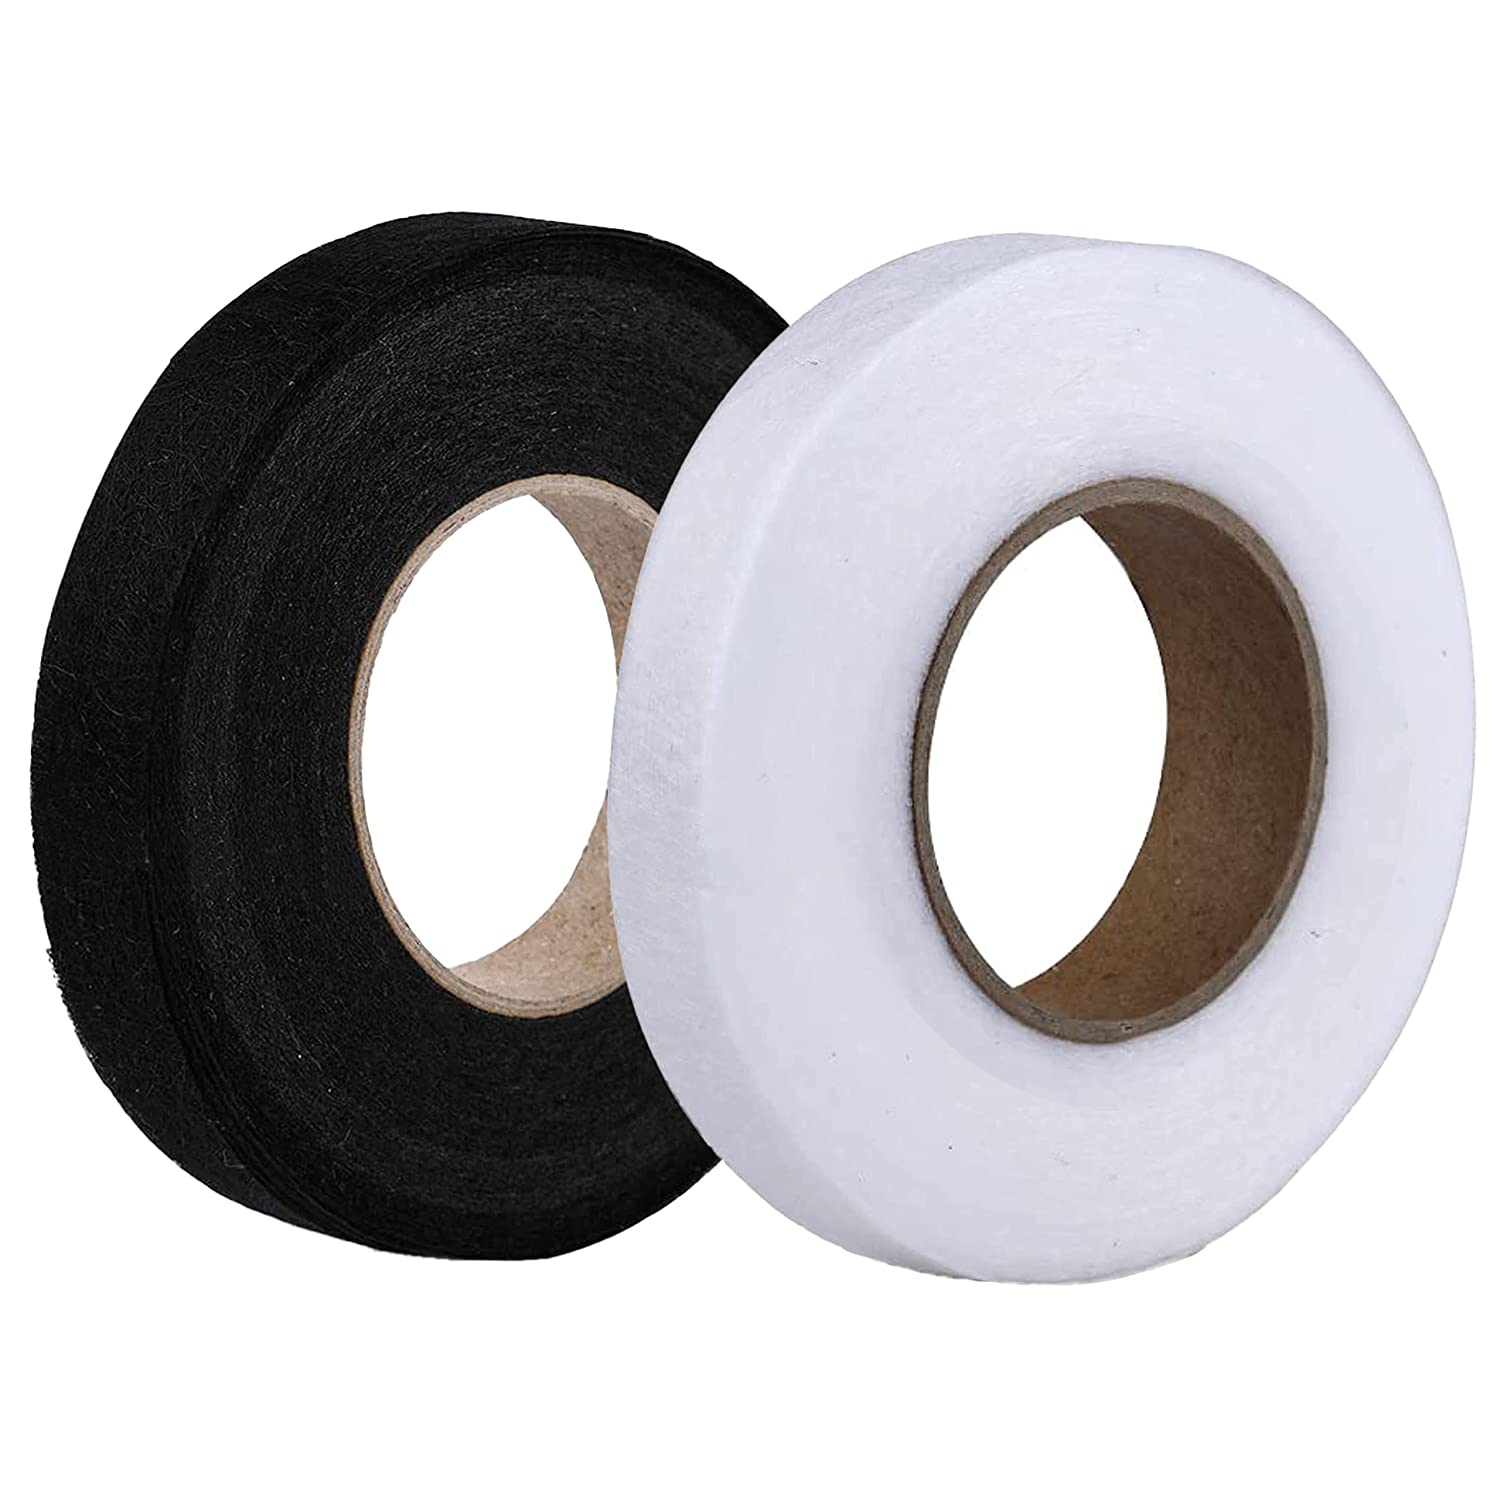 Adhesive Tape Hemming Fabric  Iron Fabric Adhesive Tape